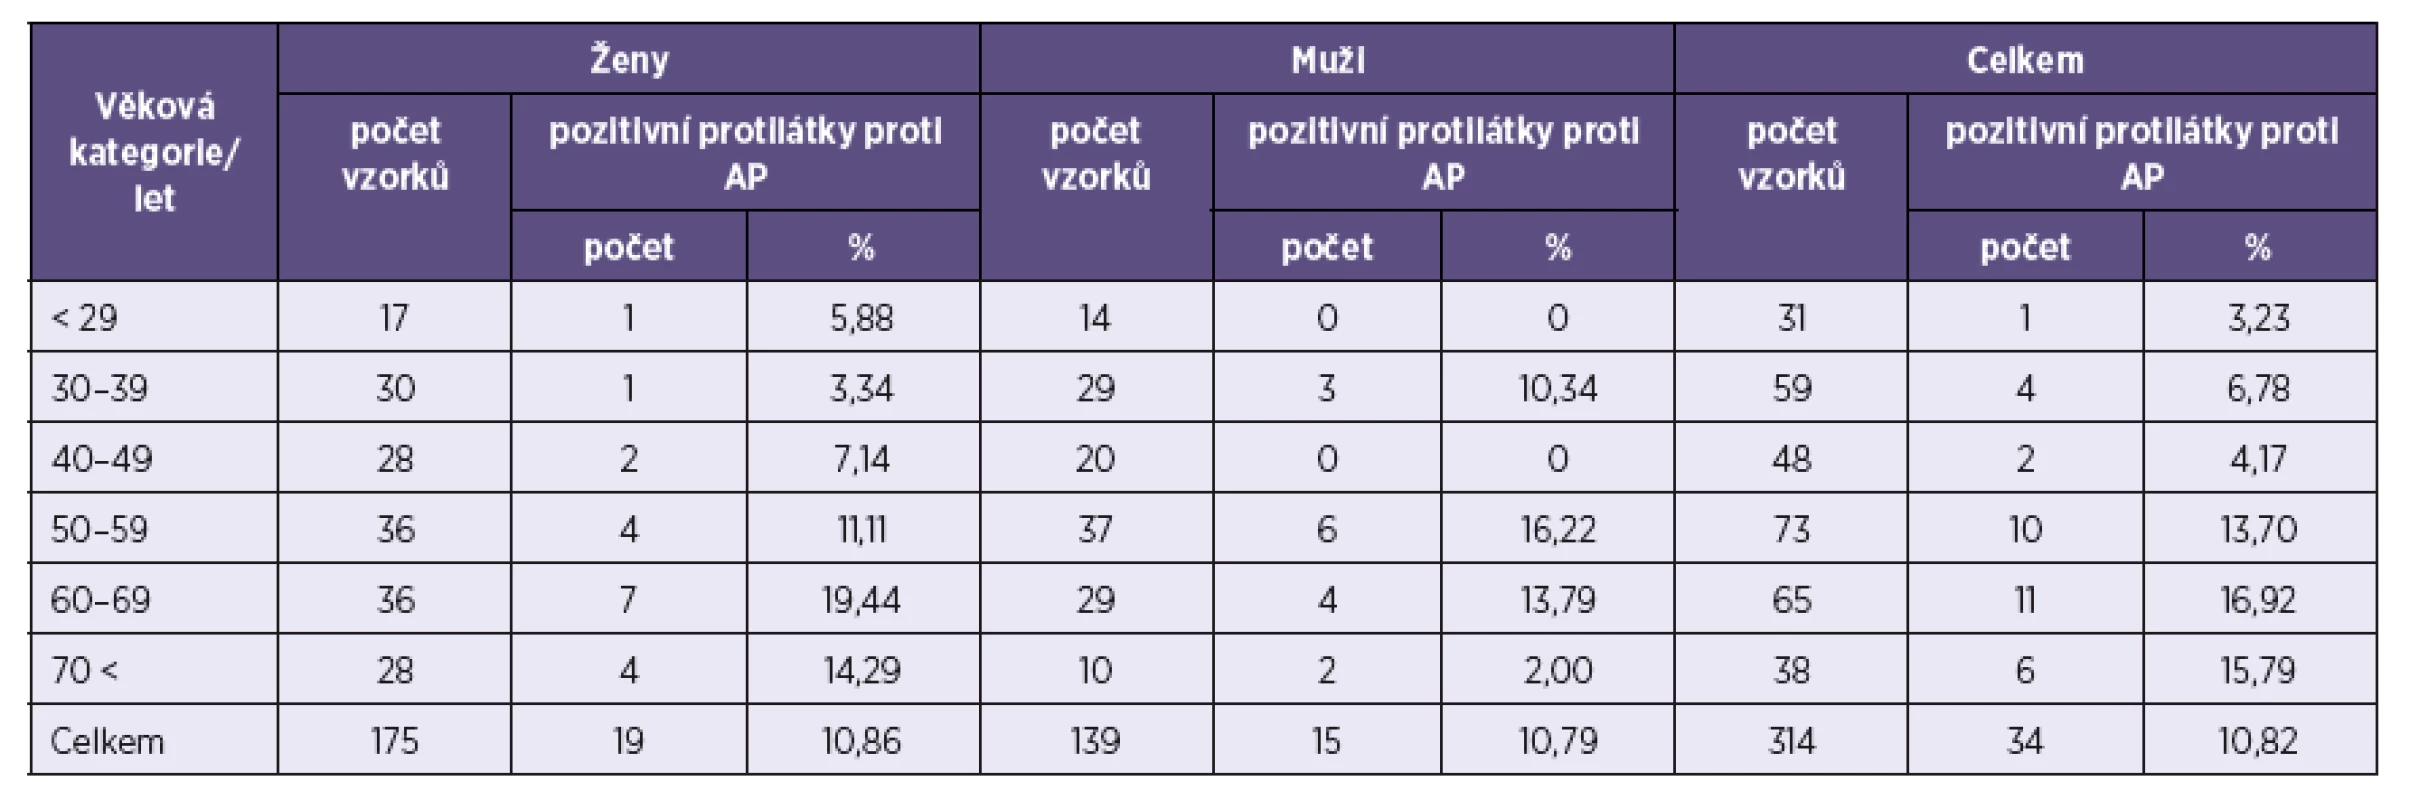 Počet pozitivních vzorků na protilátky proti &lt;i&gt;A. phagocytophilum&lt;/i&gt; (AP) v jednotlivých věkových kategoriích
Table 2. Positivity for anti-&lt;i&gt;A. phagocytophilum&lt;/i&gt; (AP) antibodies by age category